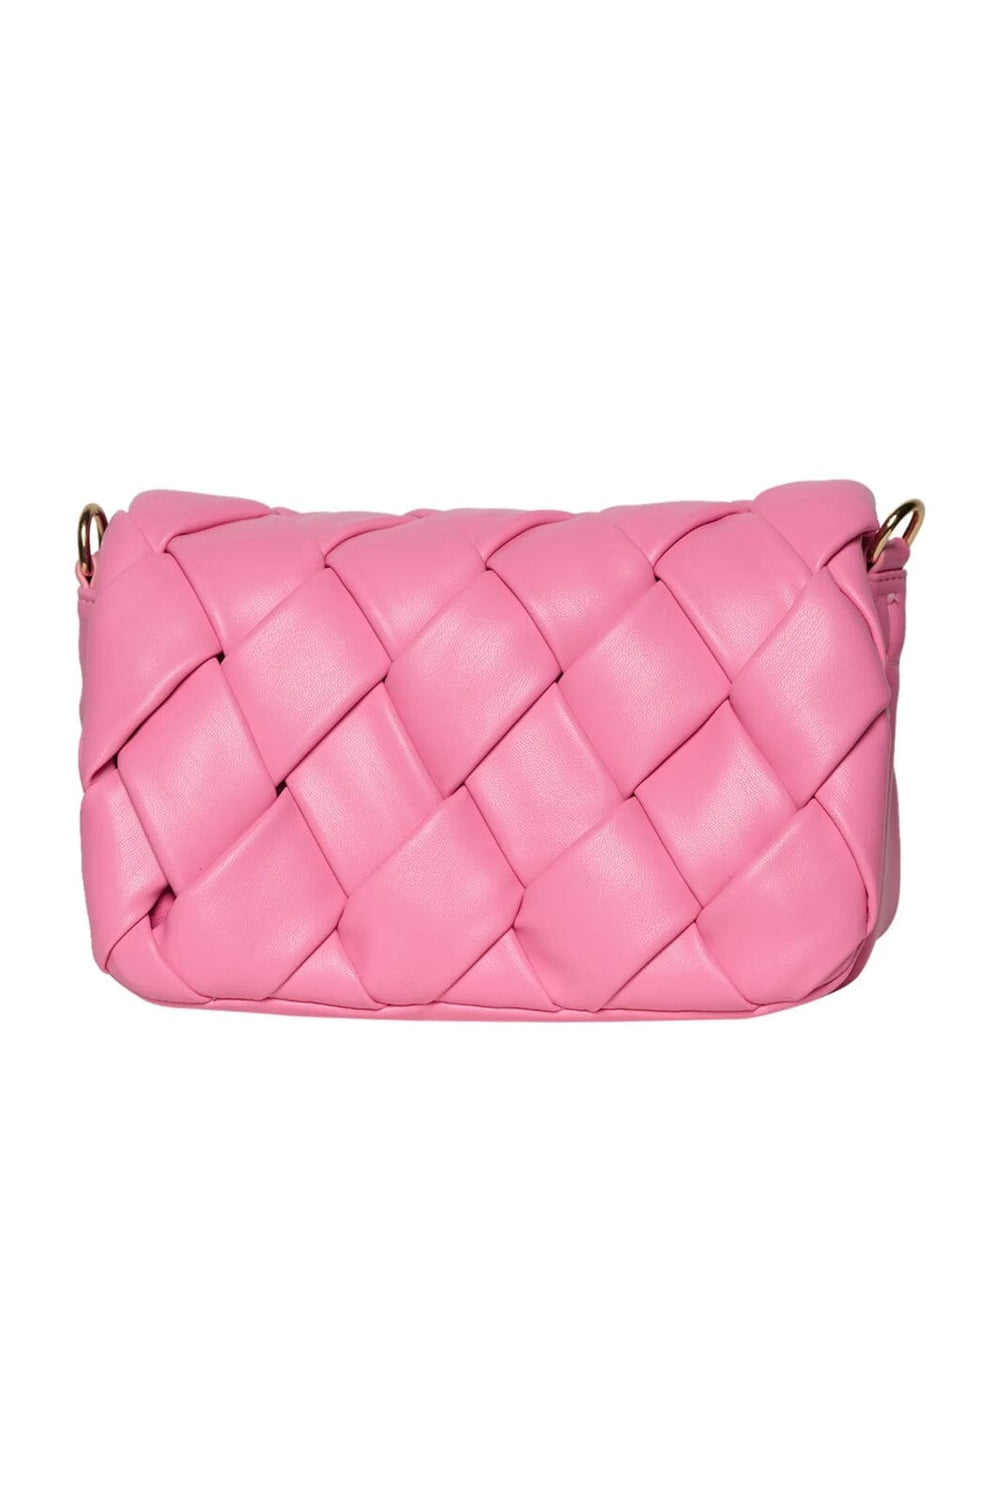 Noella - Brick Compartment Bag - Bubble Pink Tasker 